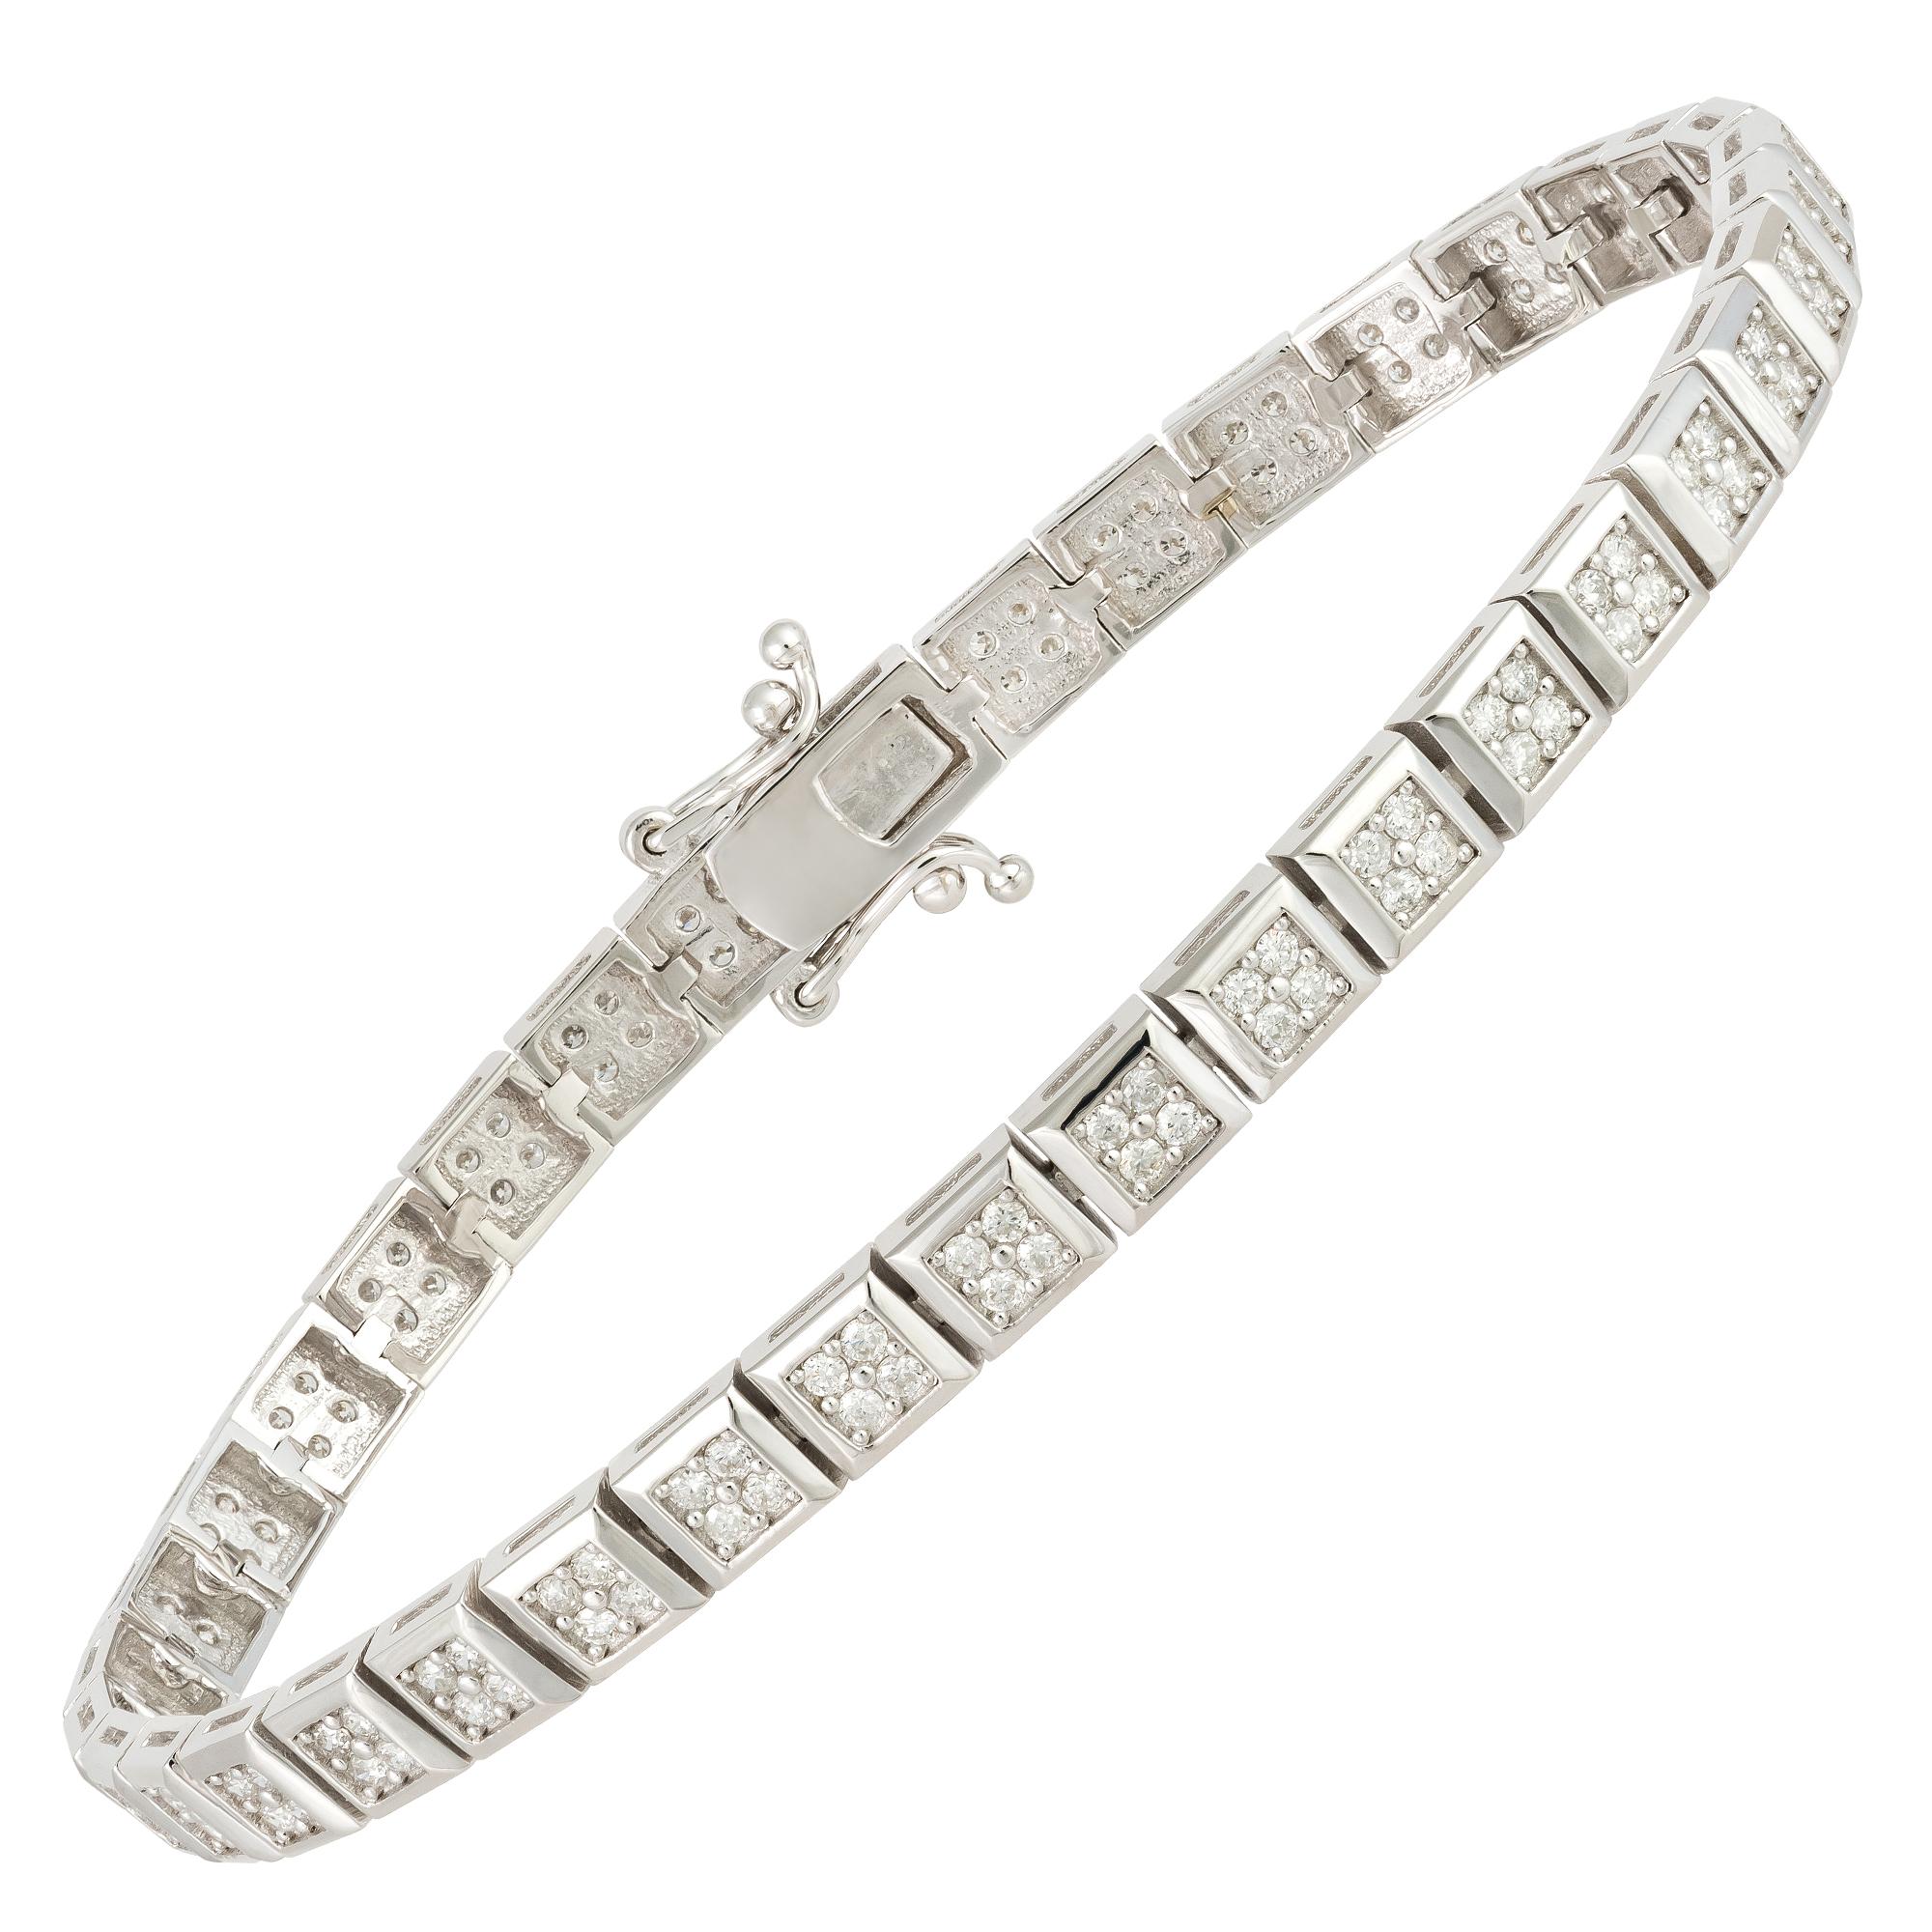 Modern Classic White Gold 18K Bracelet Diamond For Her For Sale